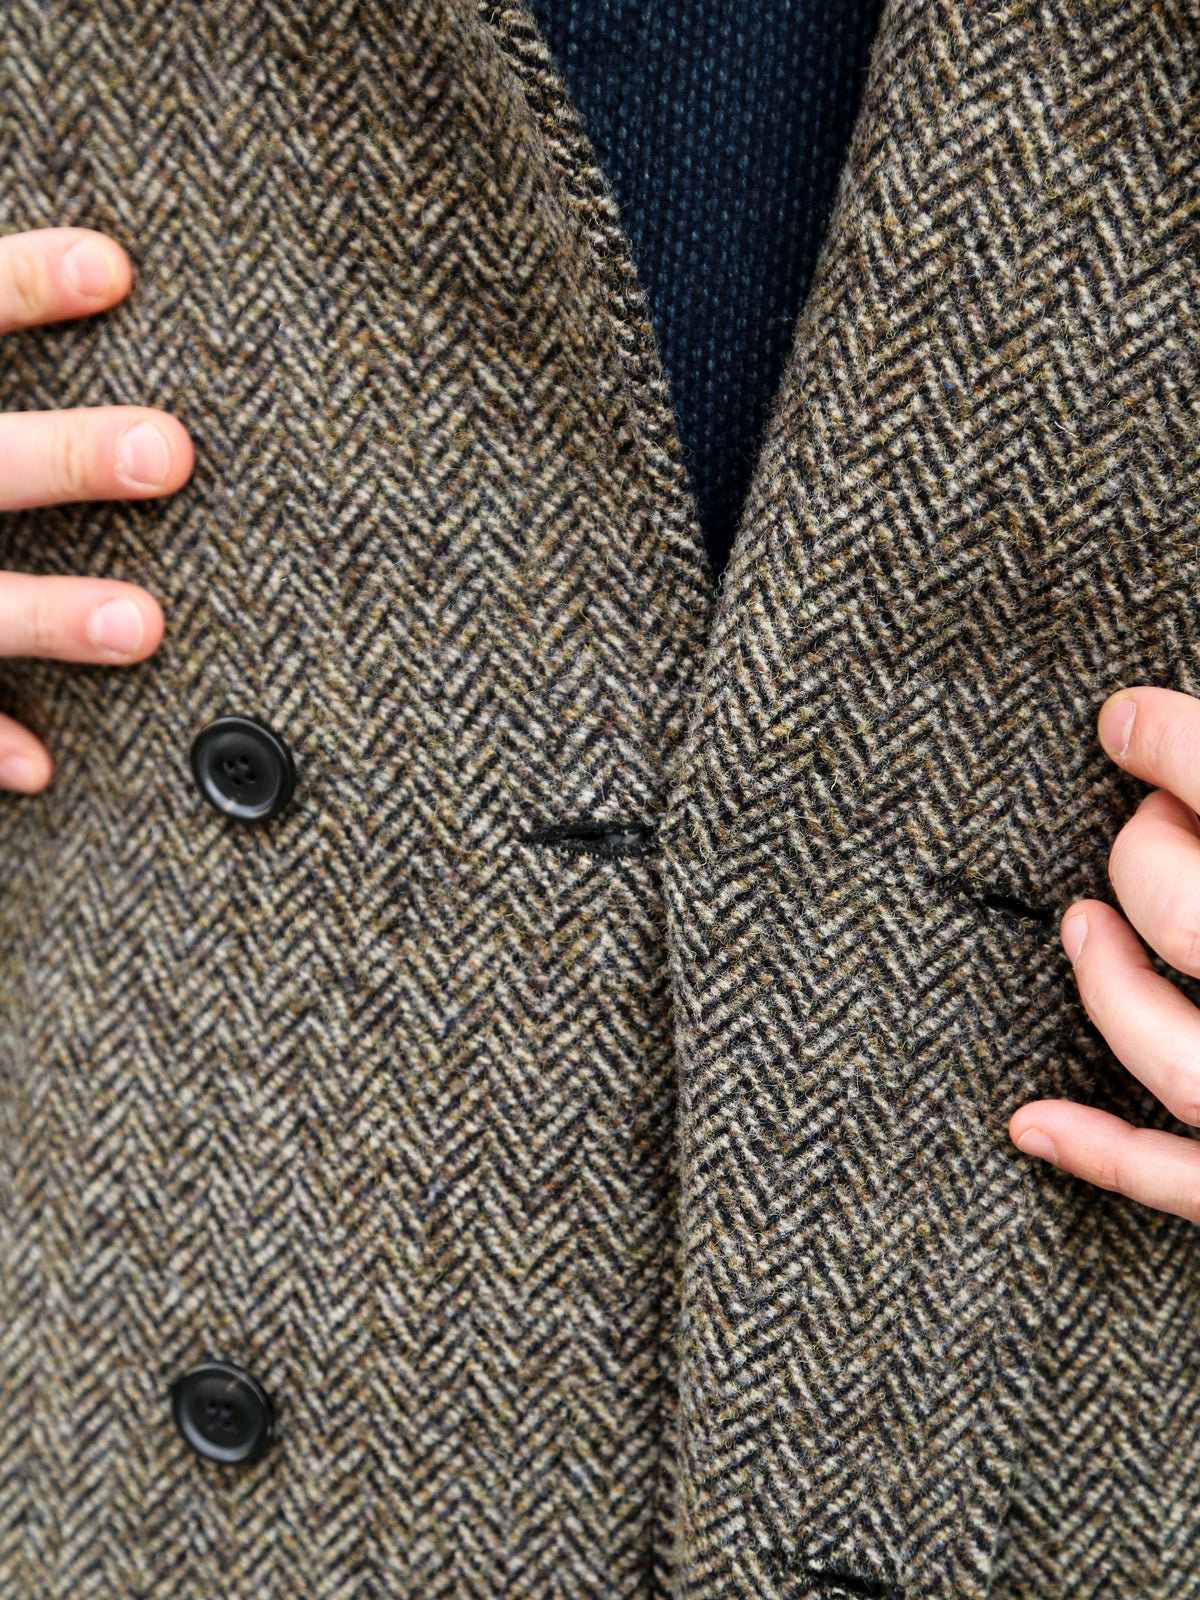 Hansen Garments 26-59-7 Sigurd Long Lined Wool Coat - Brown Tweed